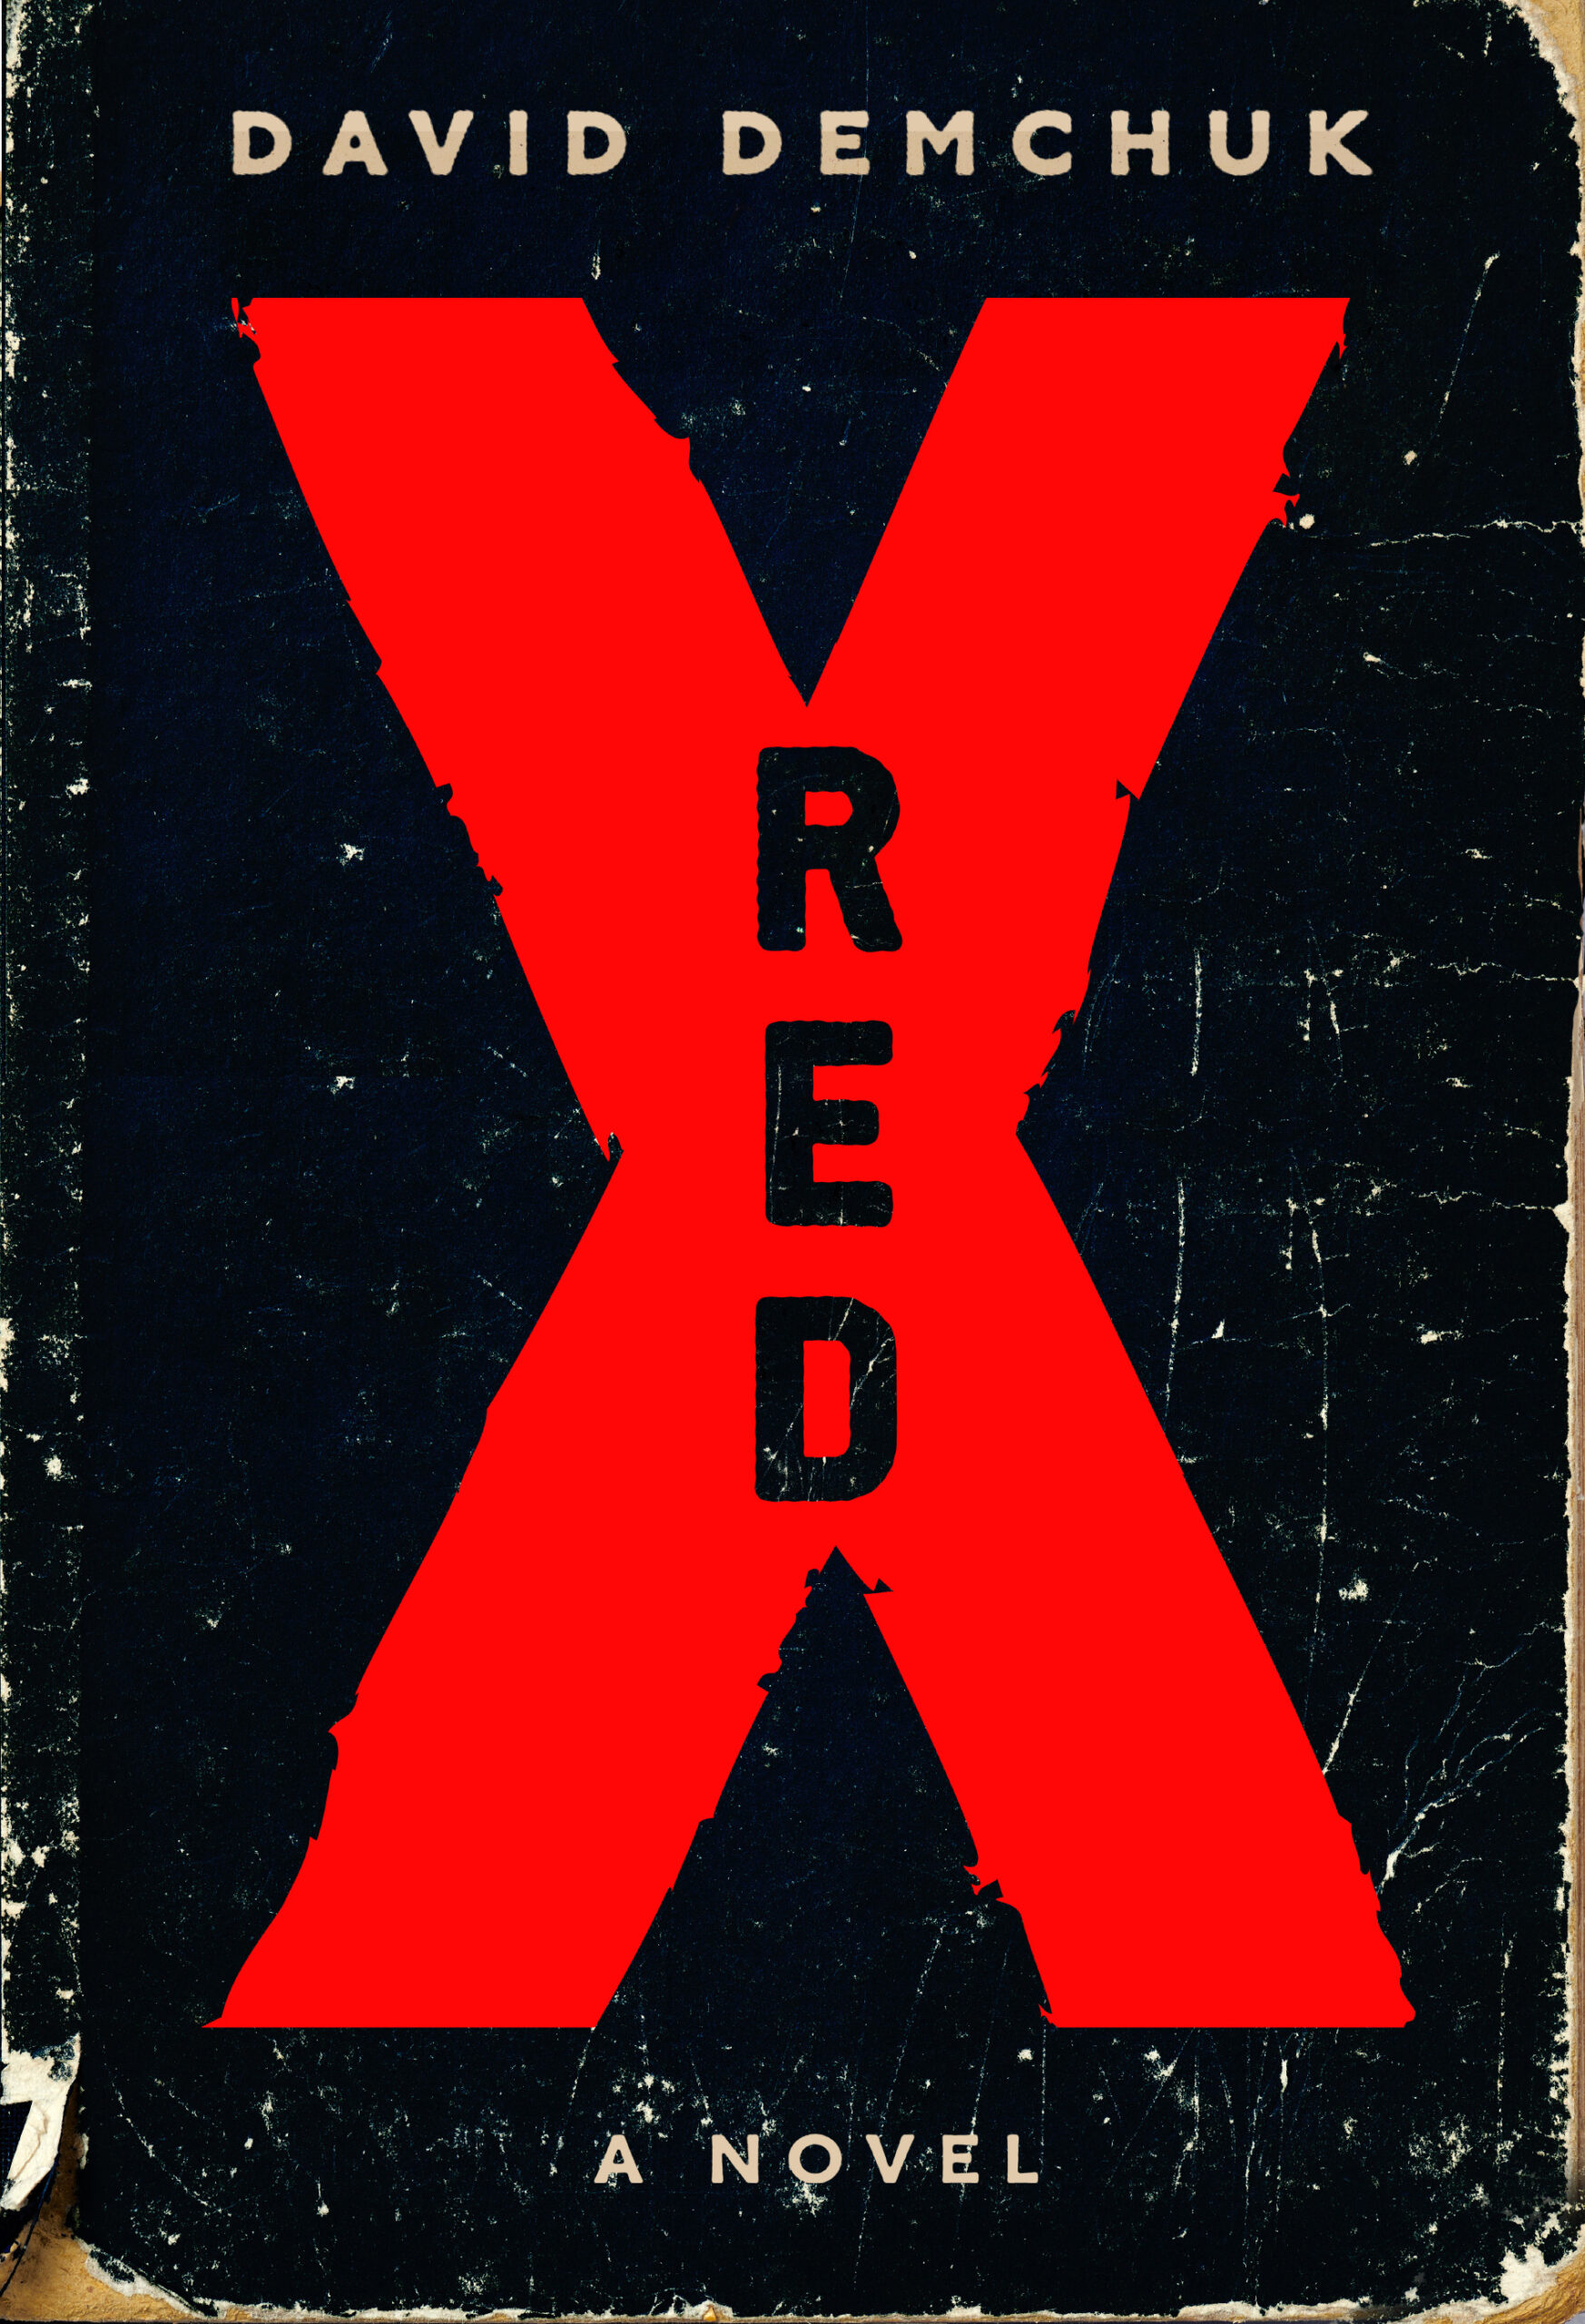 David Demchuk's Red X book cover